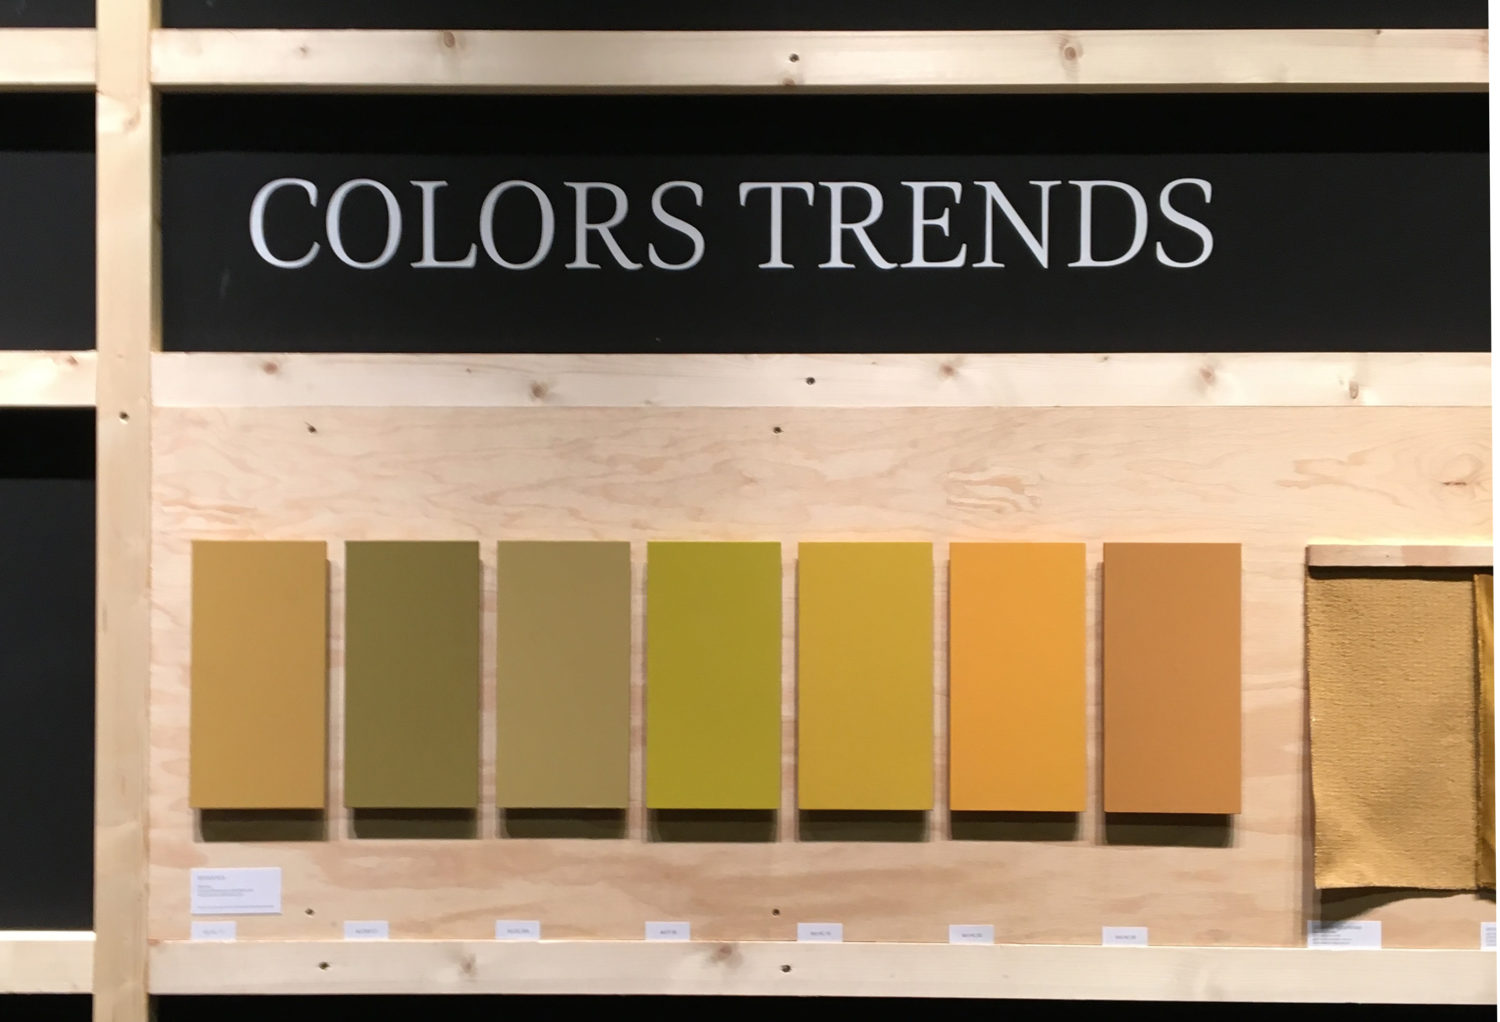 des plaques de bois sont peintes en dégradés de teintes ocre-jaune et collé sur un contreplaqué sous le titre Colors Trends